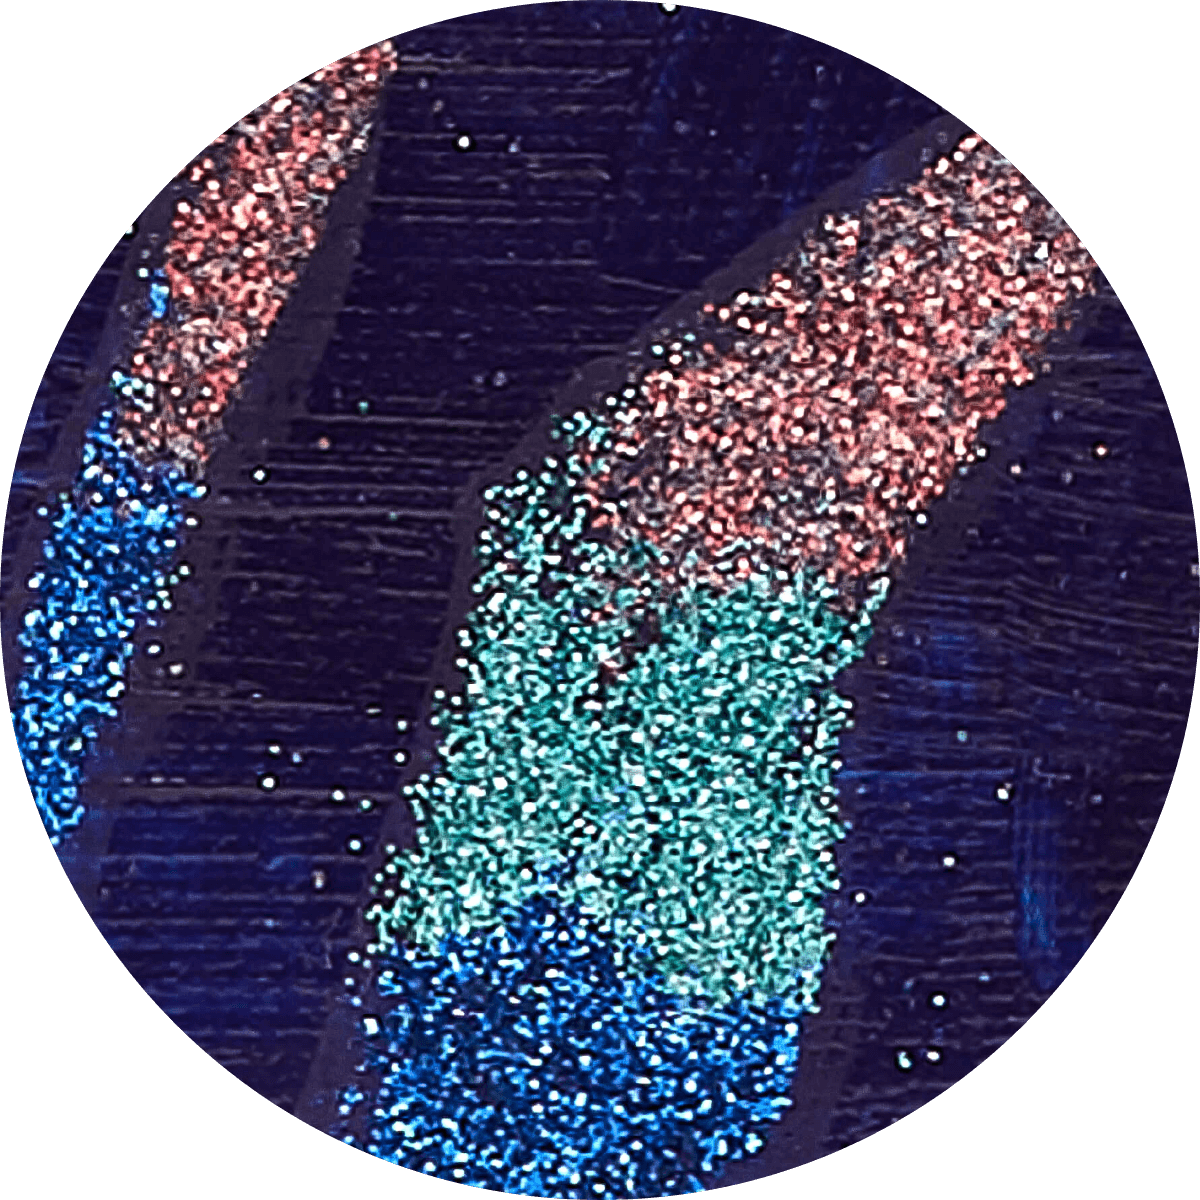 Acrylic + Glitter Technique